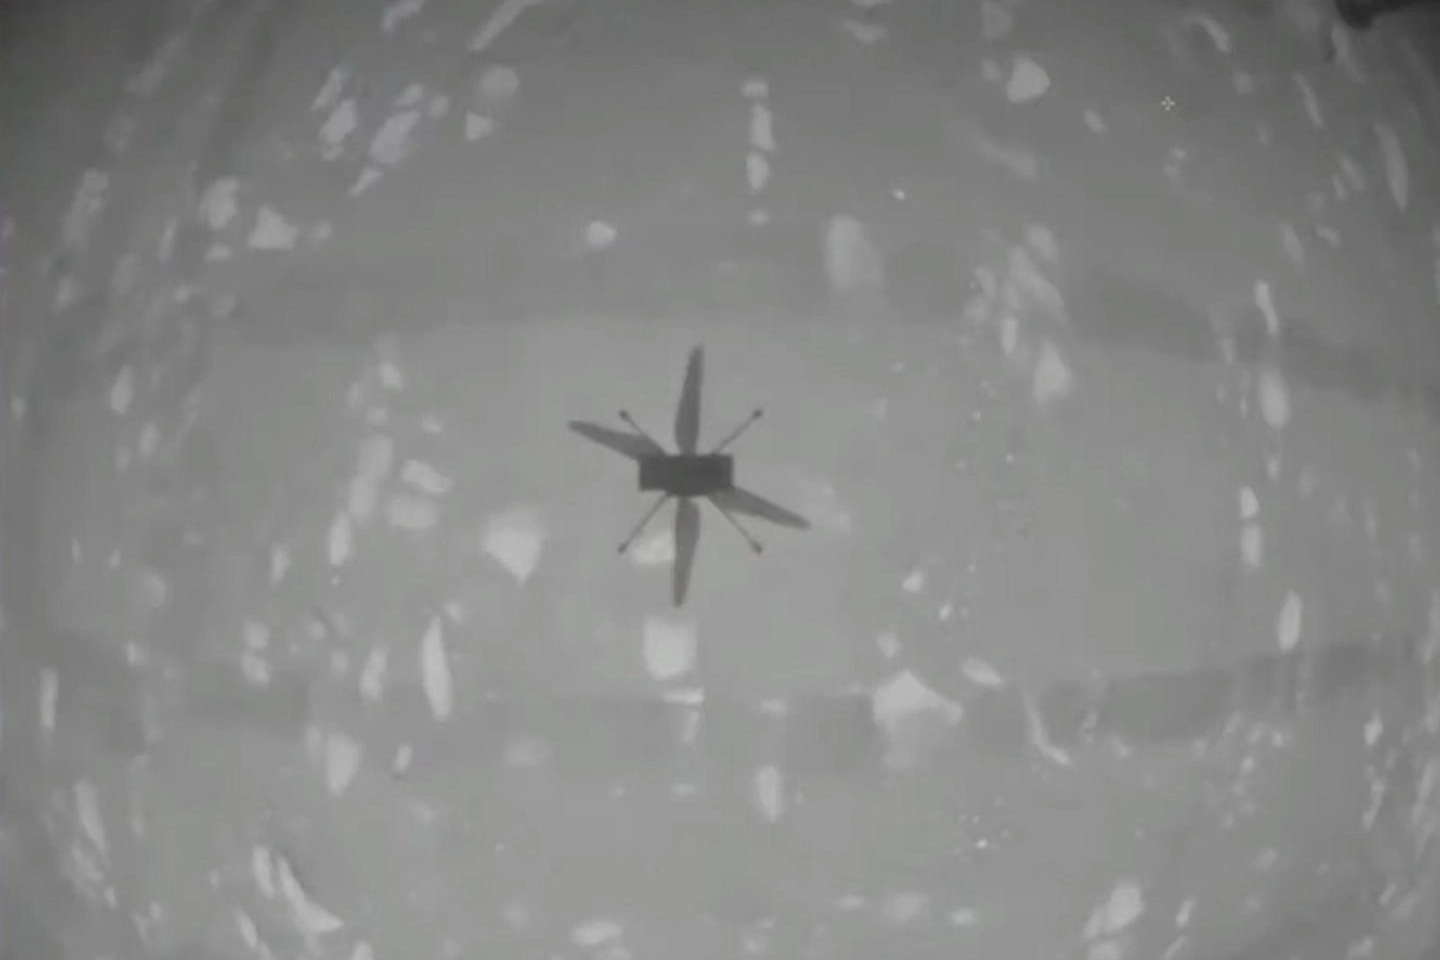 Il drone-elicottero Ingenuity in volo su Marte (Ansa)